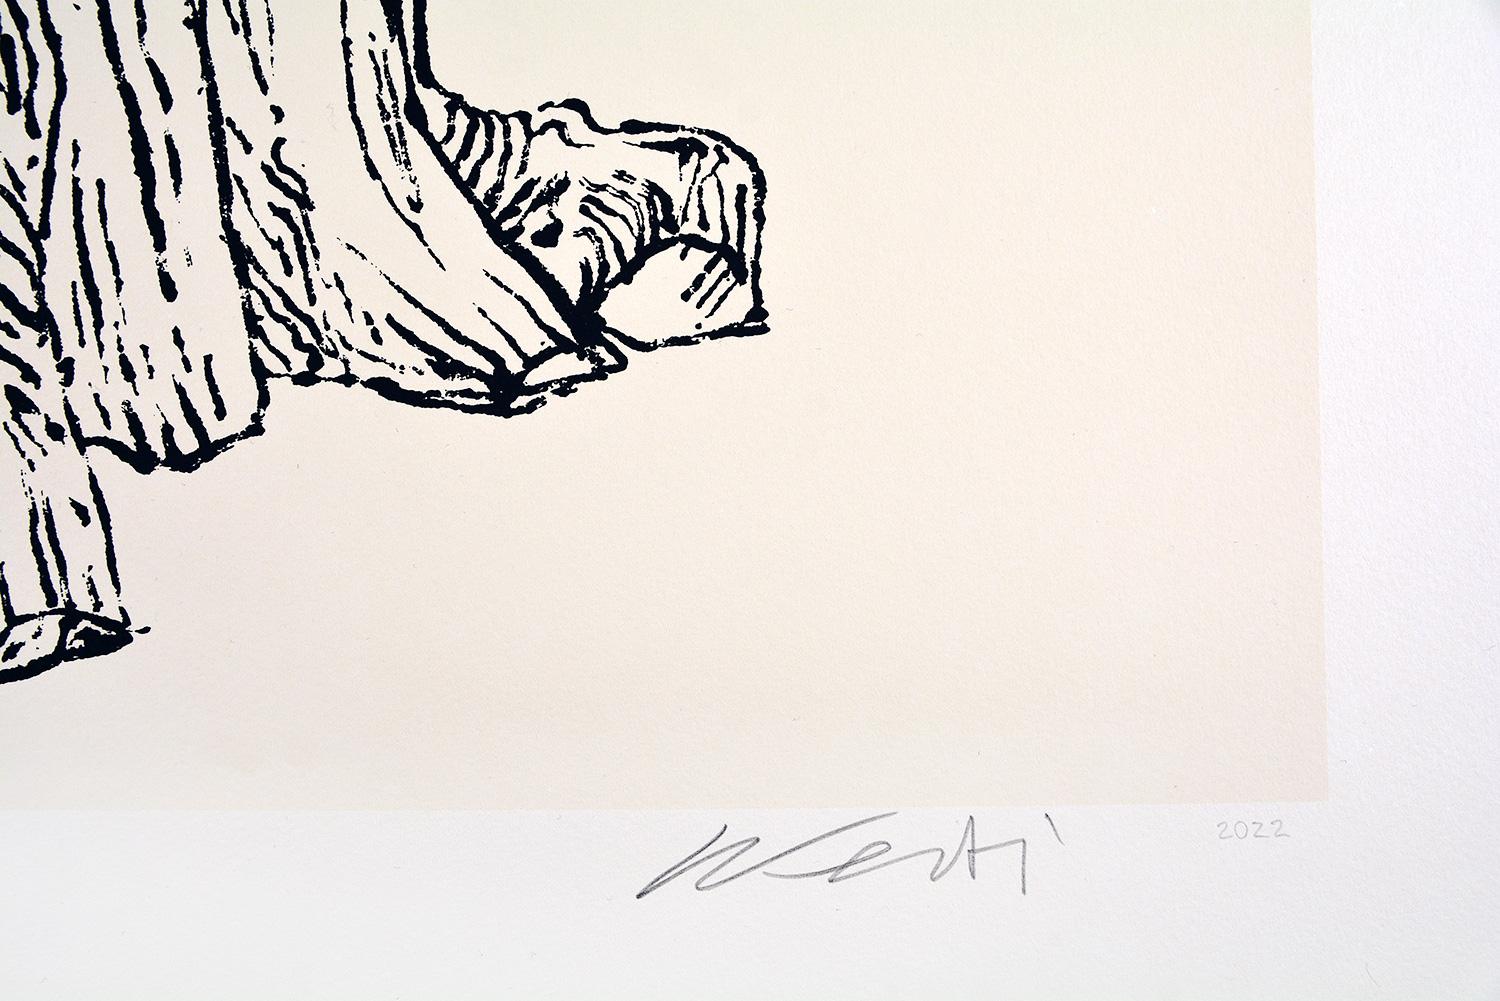 Ai Weiwei CEDRE (GRAND)

Date de création : 2022
Support : Sérigraphie sur papier Somerset Velvet Antique
Édition : 50
Taille : 70,5 x 55,5 cm
Condit : En parfait état, neuf et jamais encadré.
Sérigraphie sur papier Somerset Velvet Antique 280gsm